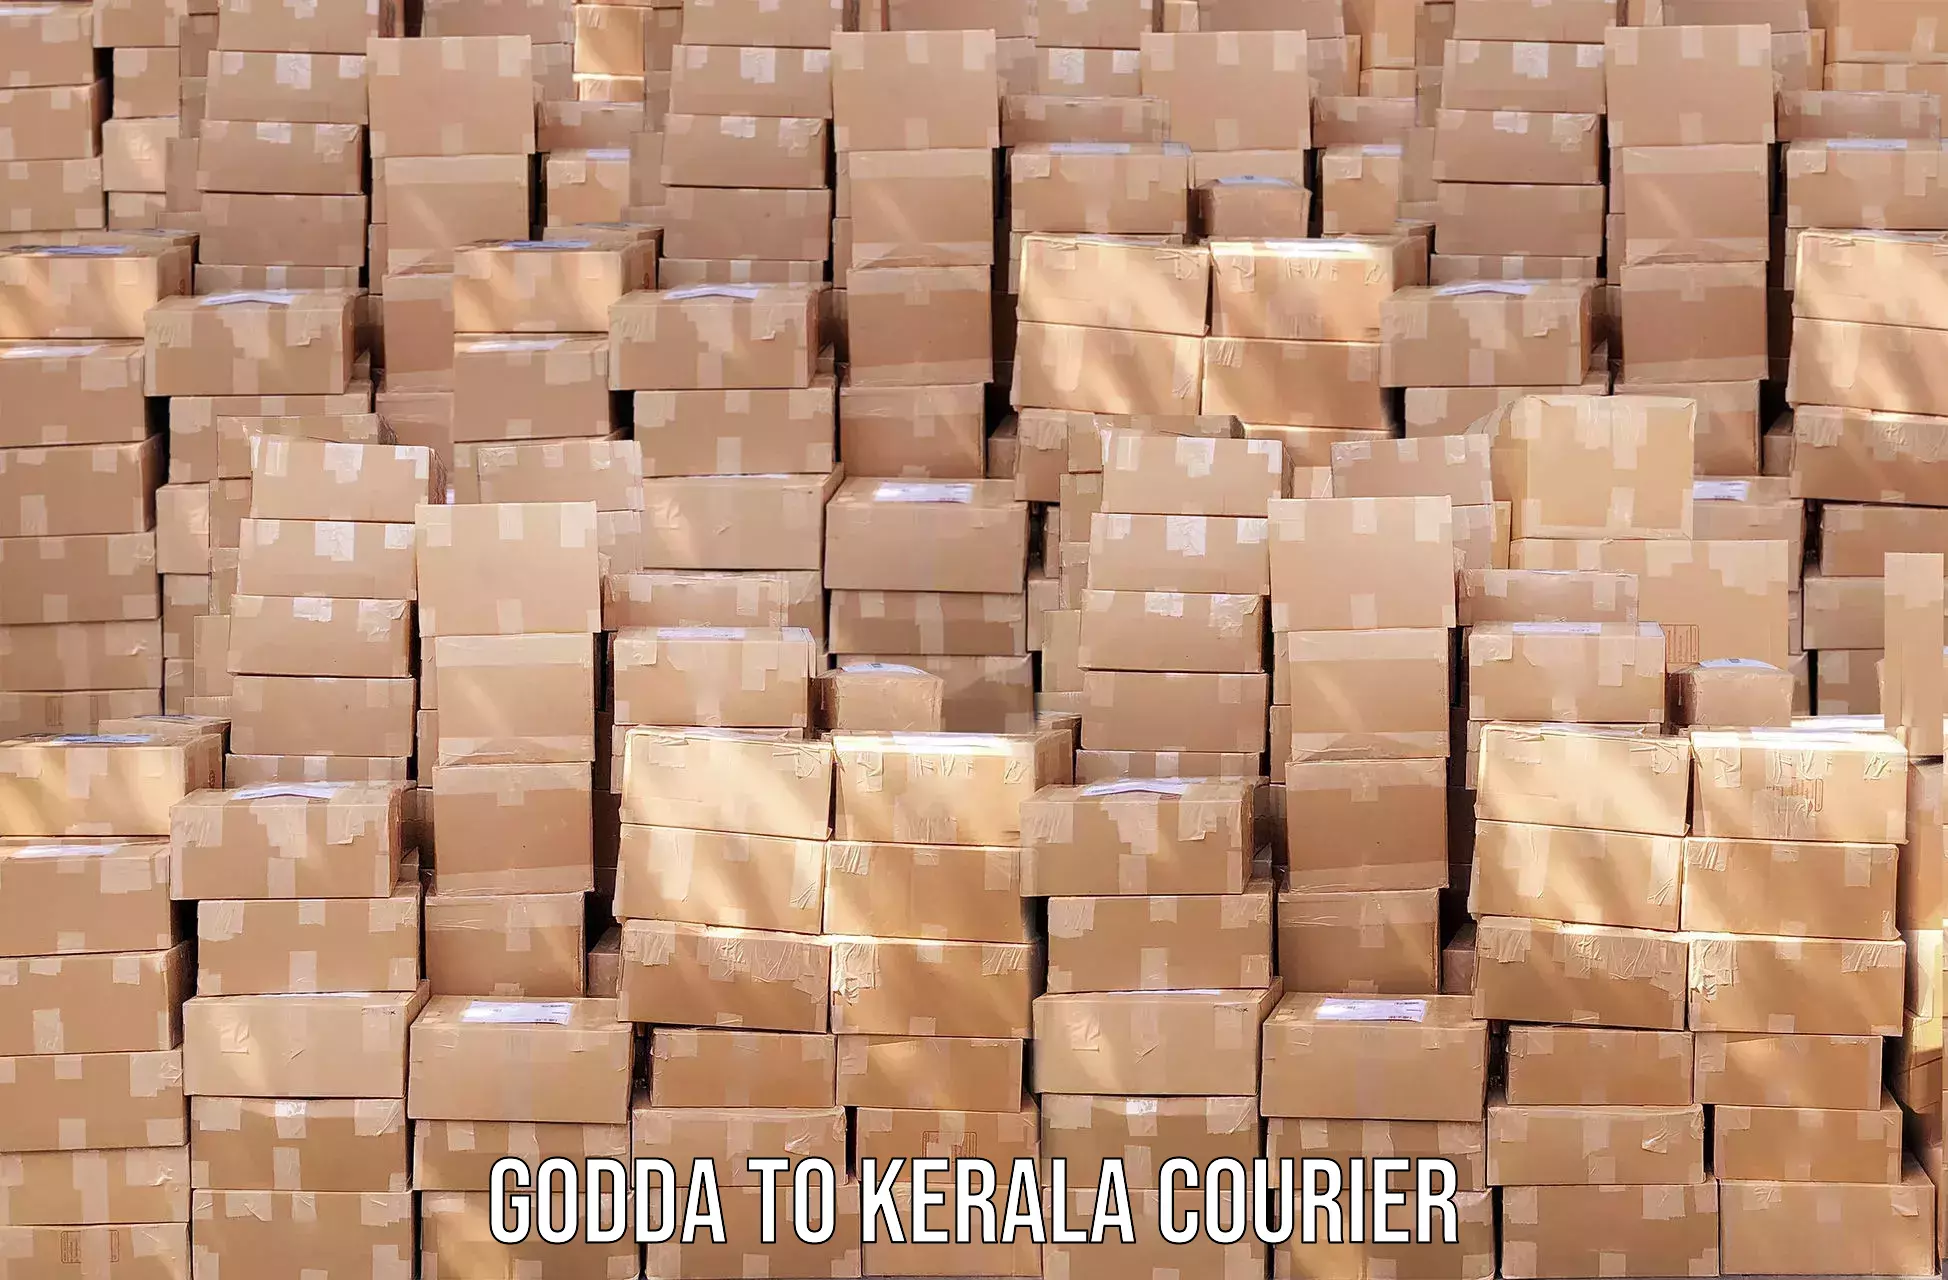 Next-day delivery options Godda to Cherthala